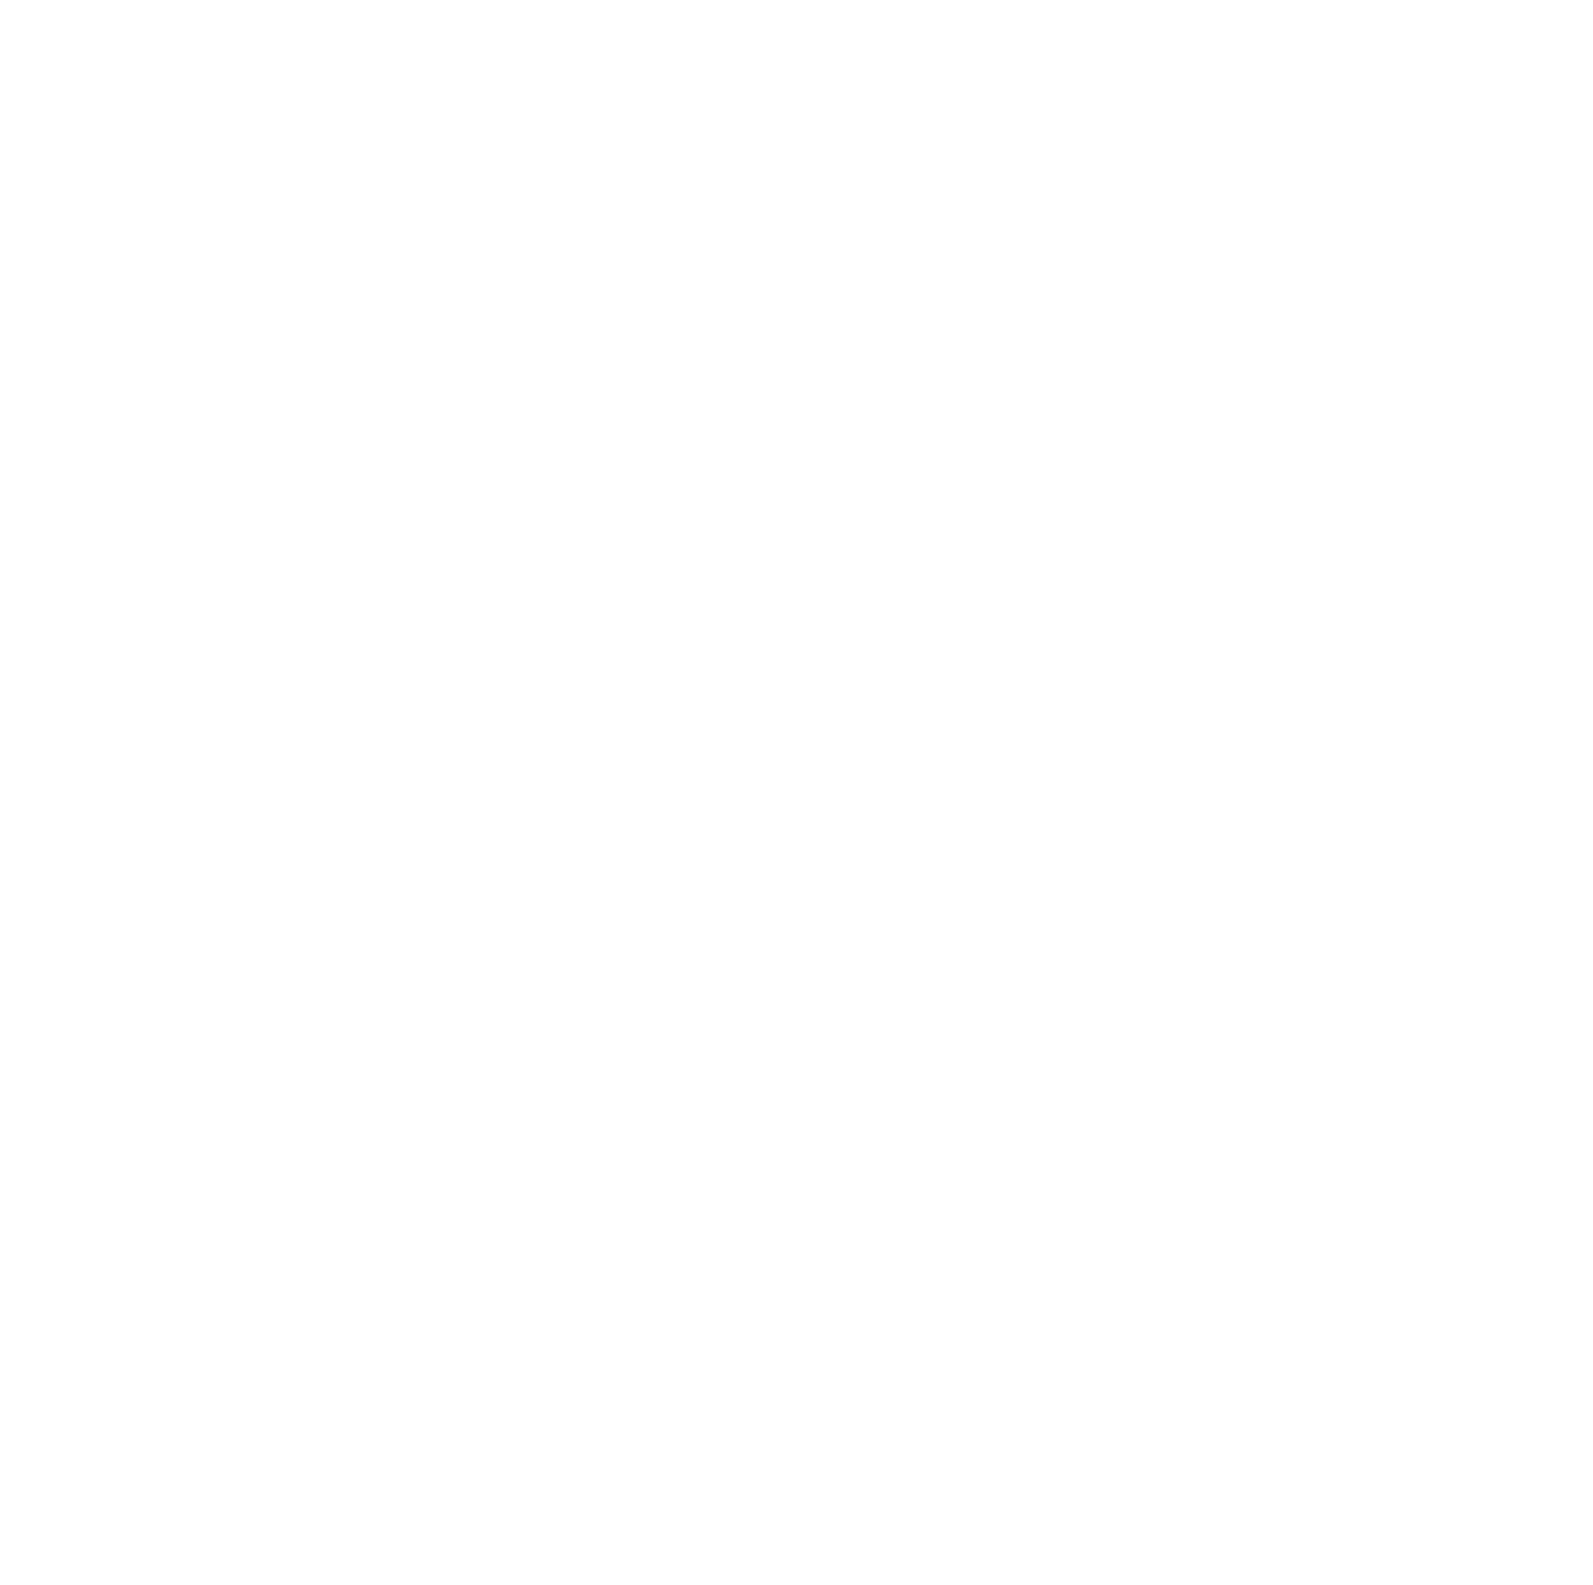 Ingredion logo for dark backgrounds (transparent PNG)